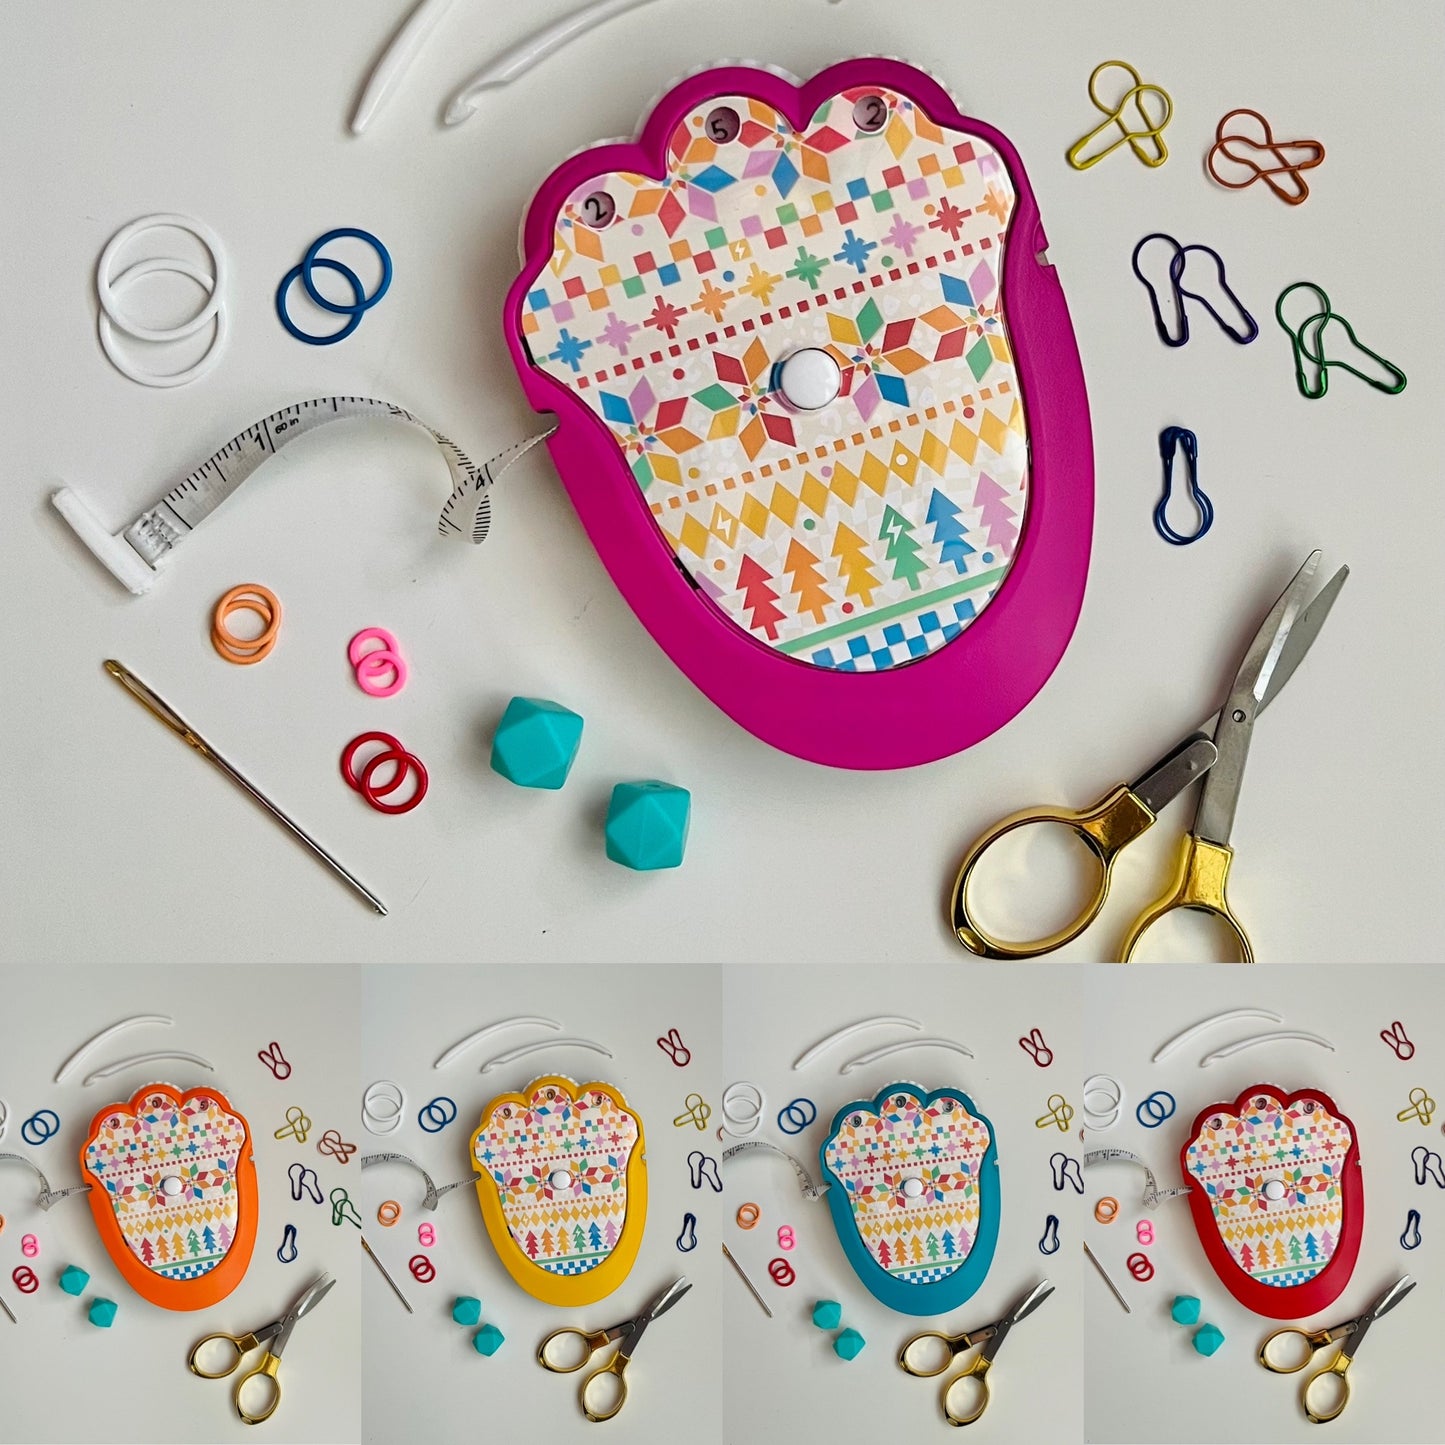 The Knit & Crochet Kit -Rainbow Fair Isle - Assorted Colors